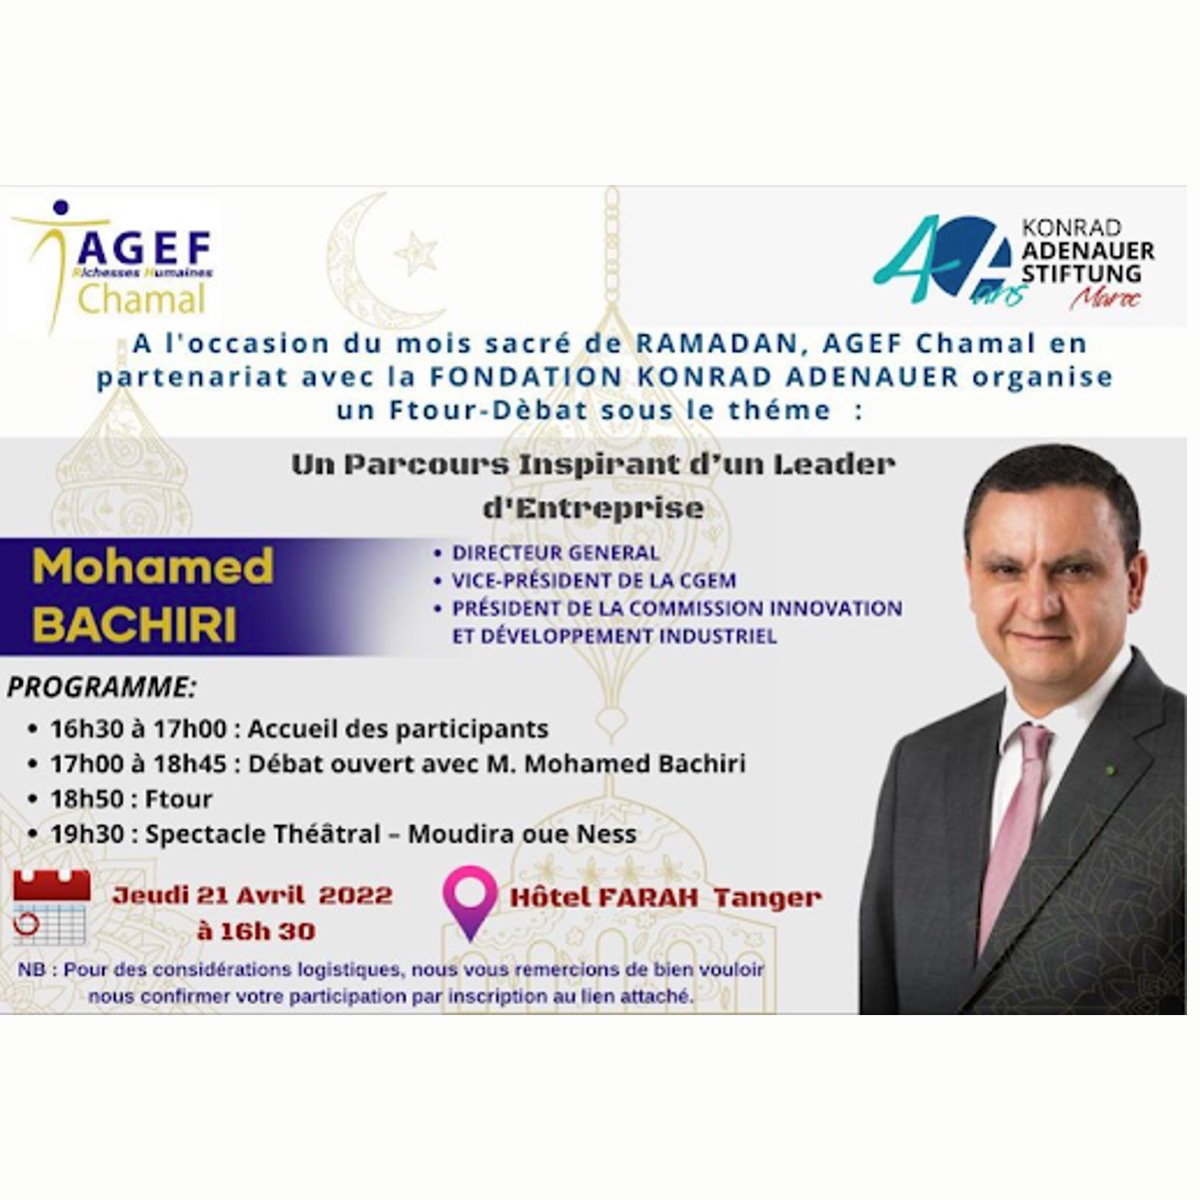 Ftour-débat sous le thème : Un parcours inspirant d'un leader d'entreprise -Mohamed Bachiri- organisé par AGEF Chamal